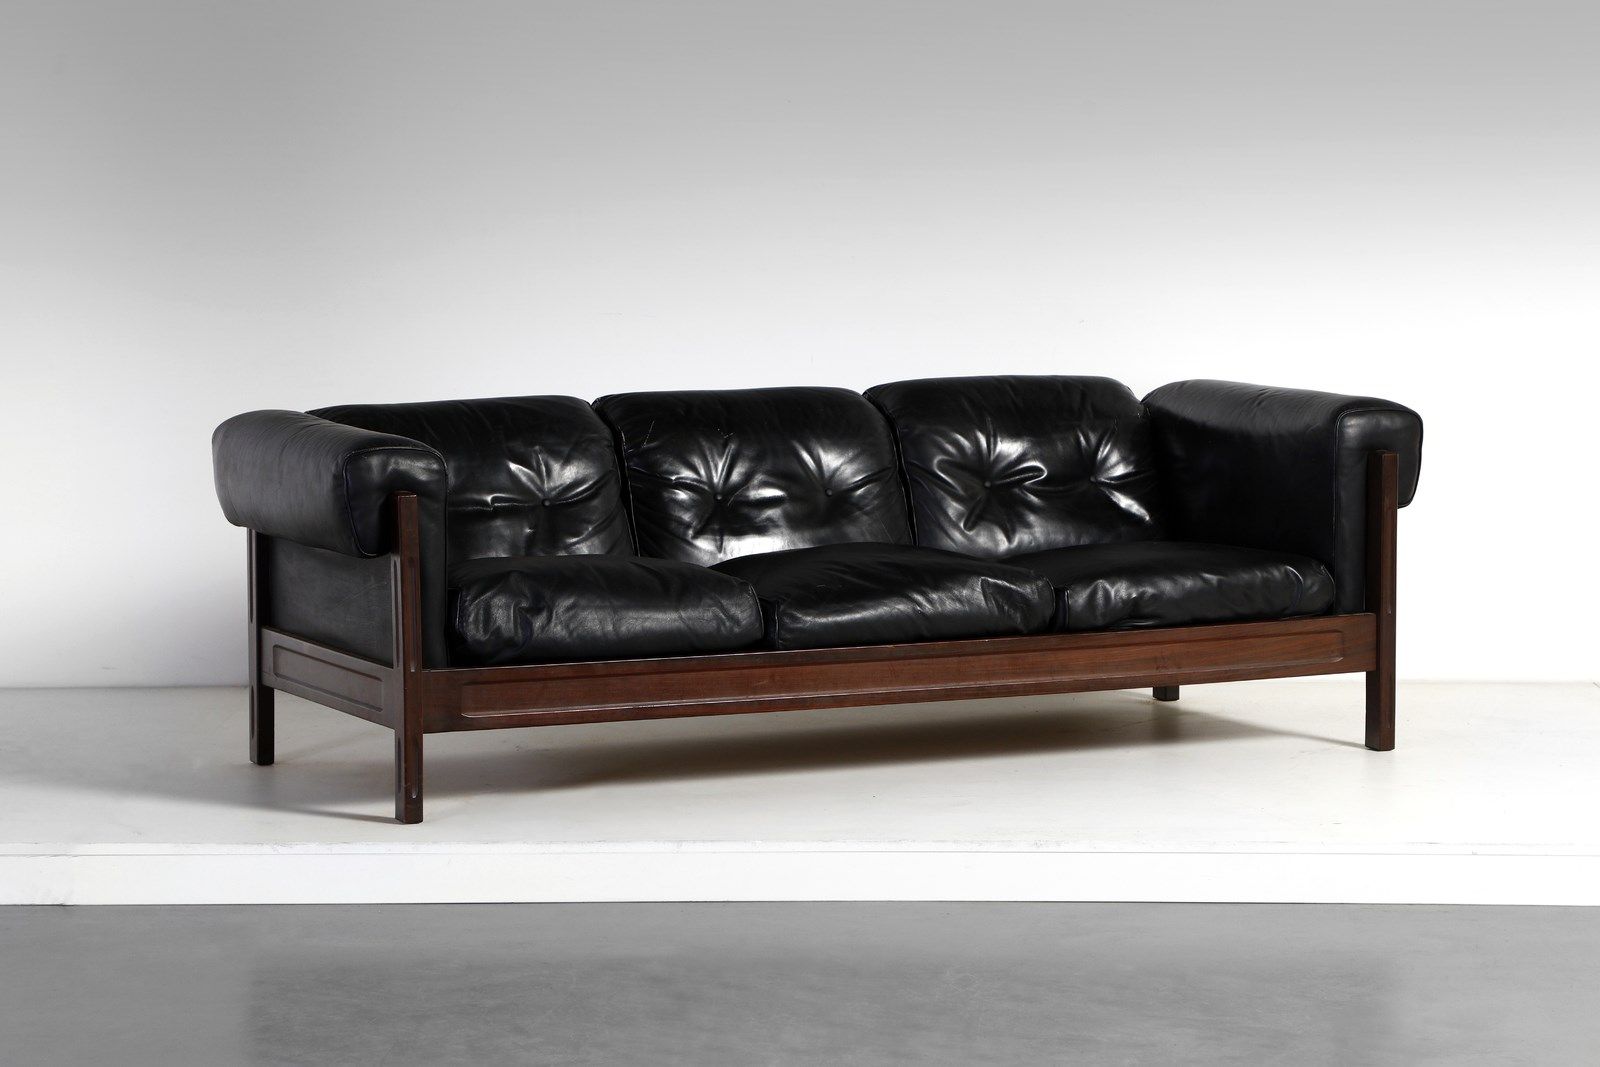 Manifattura Italiana MANIFATTURA ITALIANA 沙发。木材和软垫皮革。Cm 177.00 x 56.00 x 83.00. &hellip;